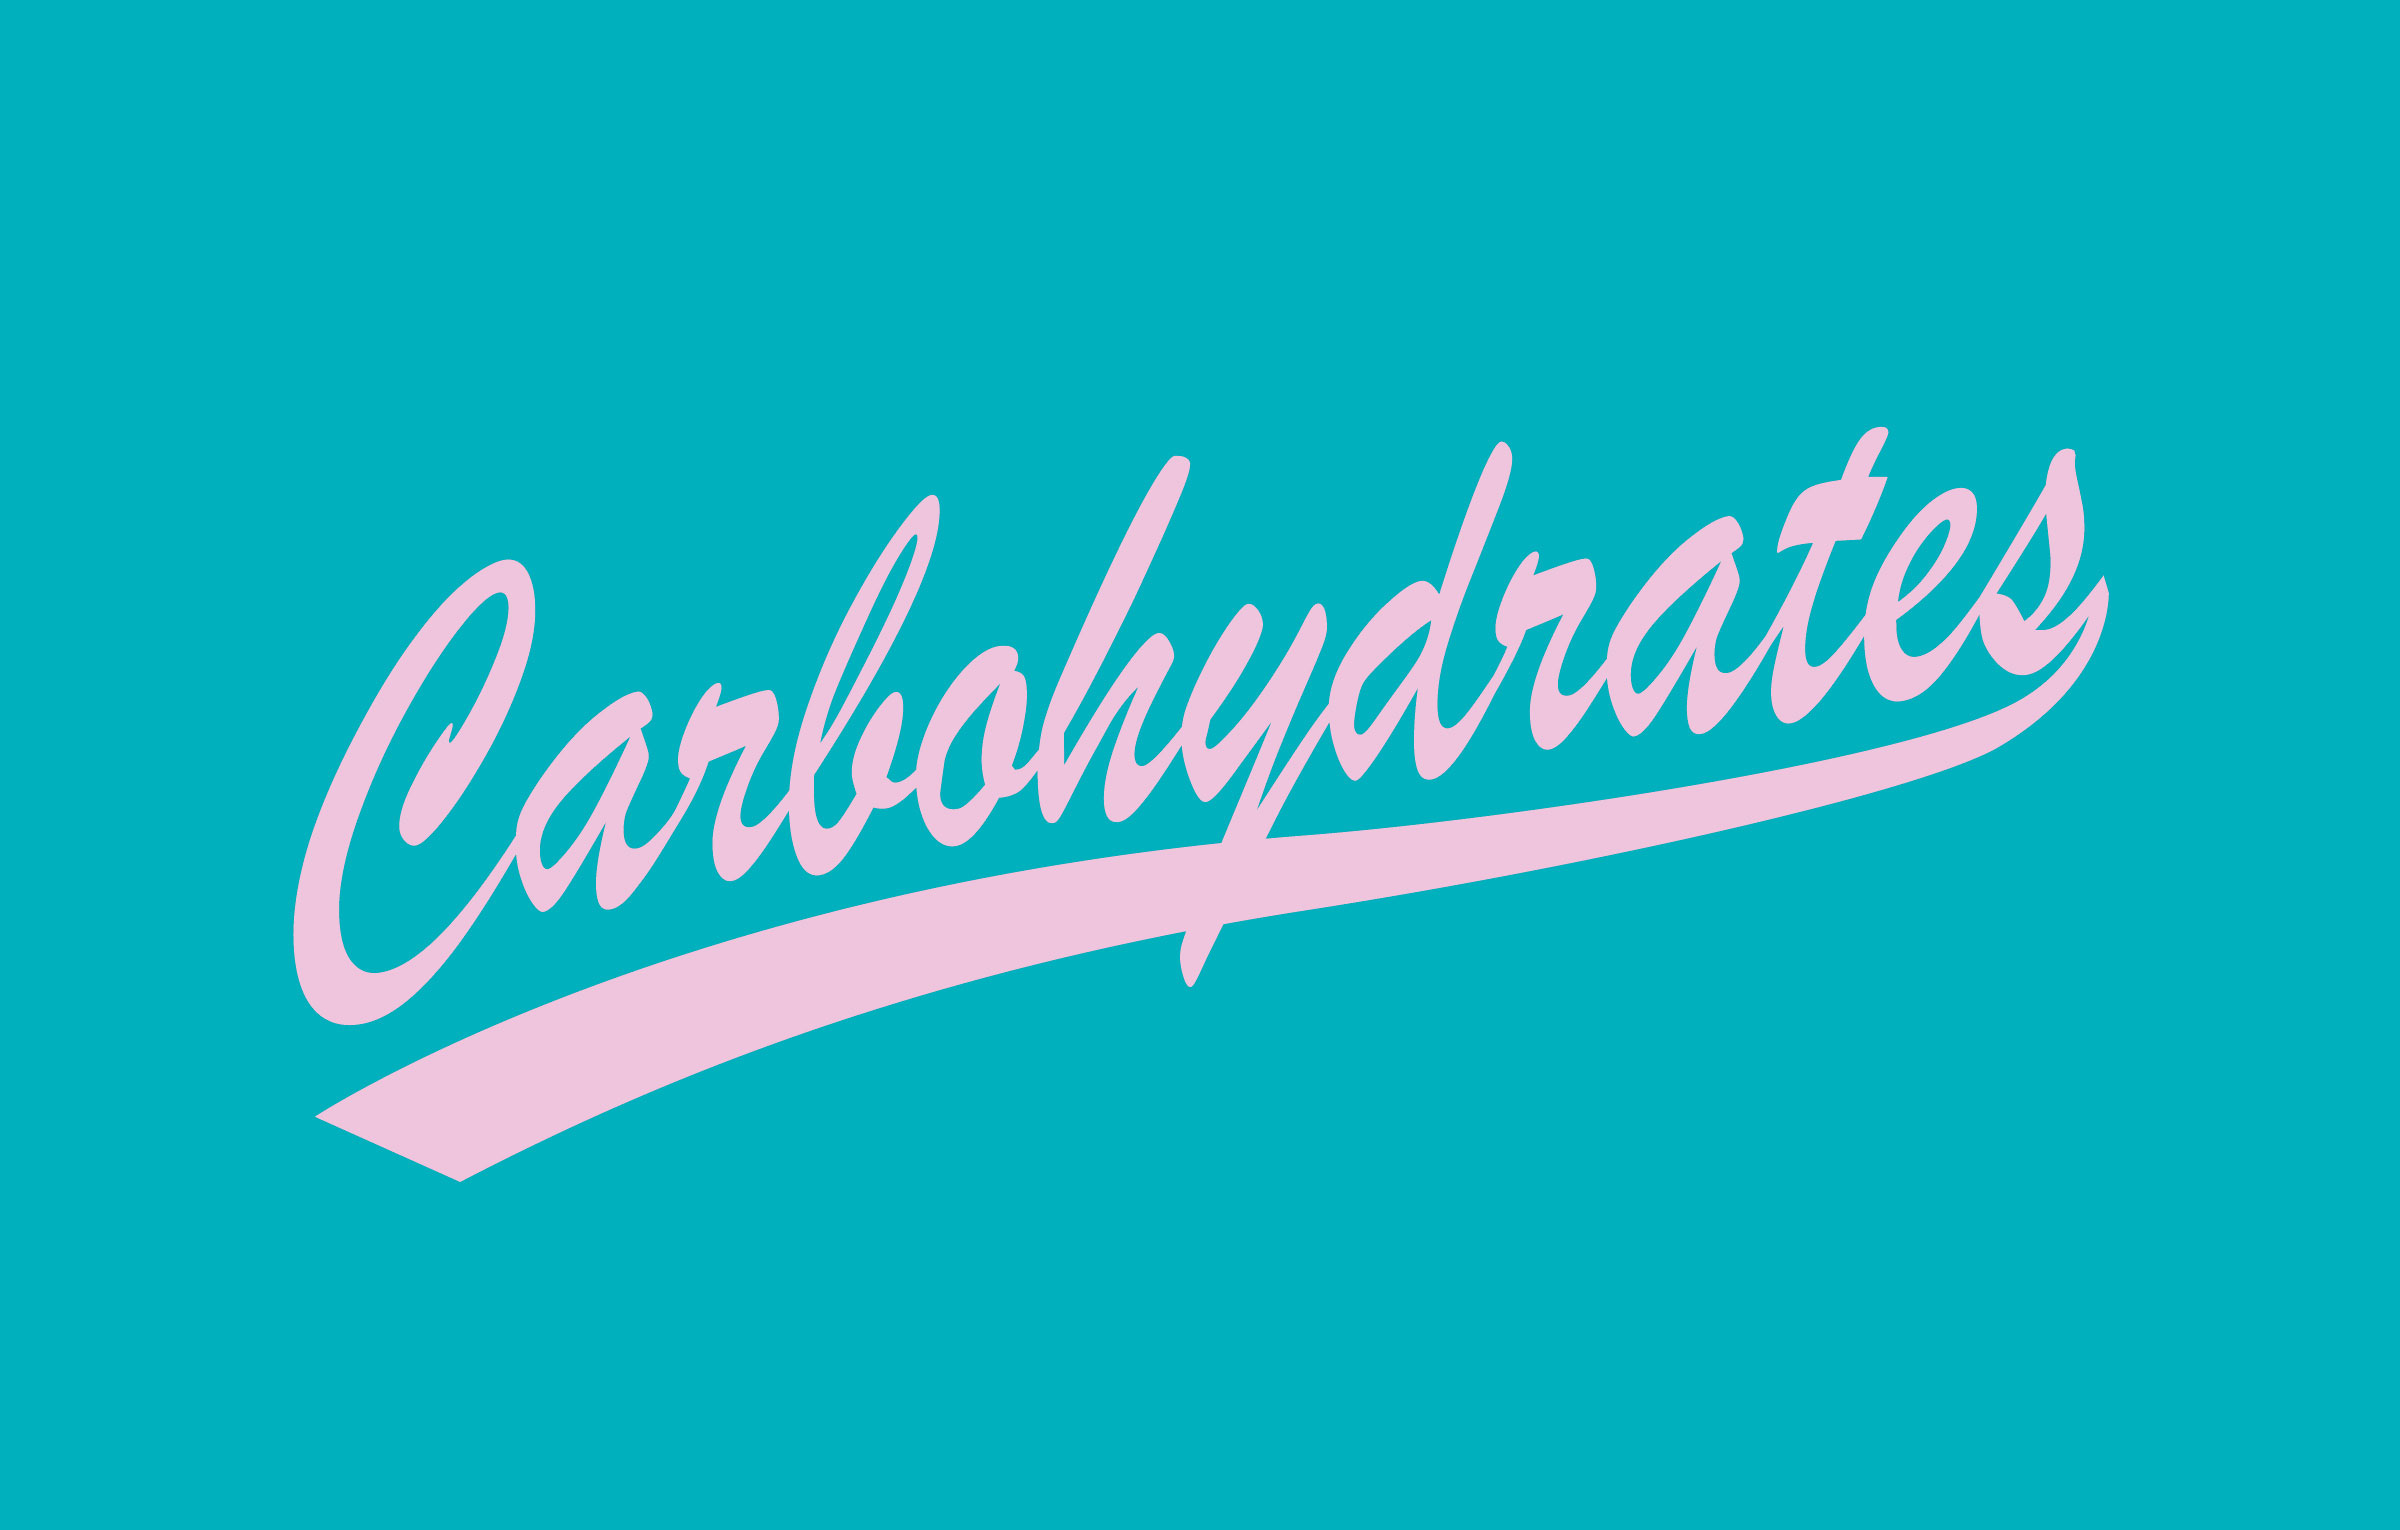 CYM_carbohydrates